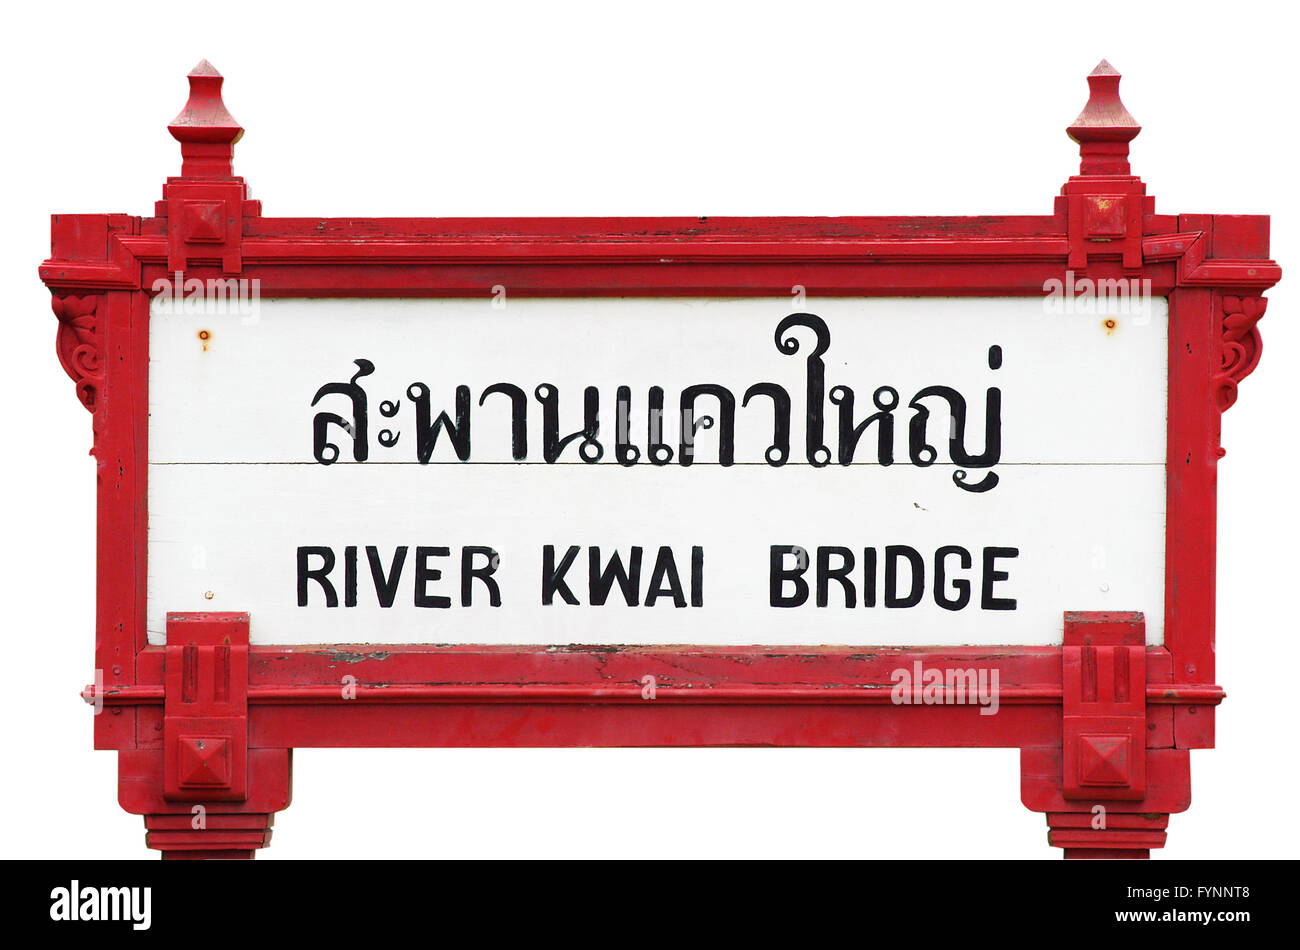 Il fiume Kwai Bridge firmare presso l'adiacente stazione ferroviaria, Kanchanaburi, Thailandia. Immagine isolata. Foto Stock